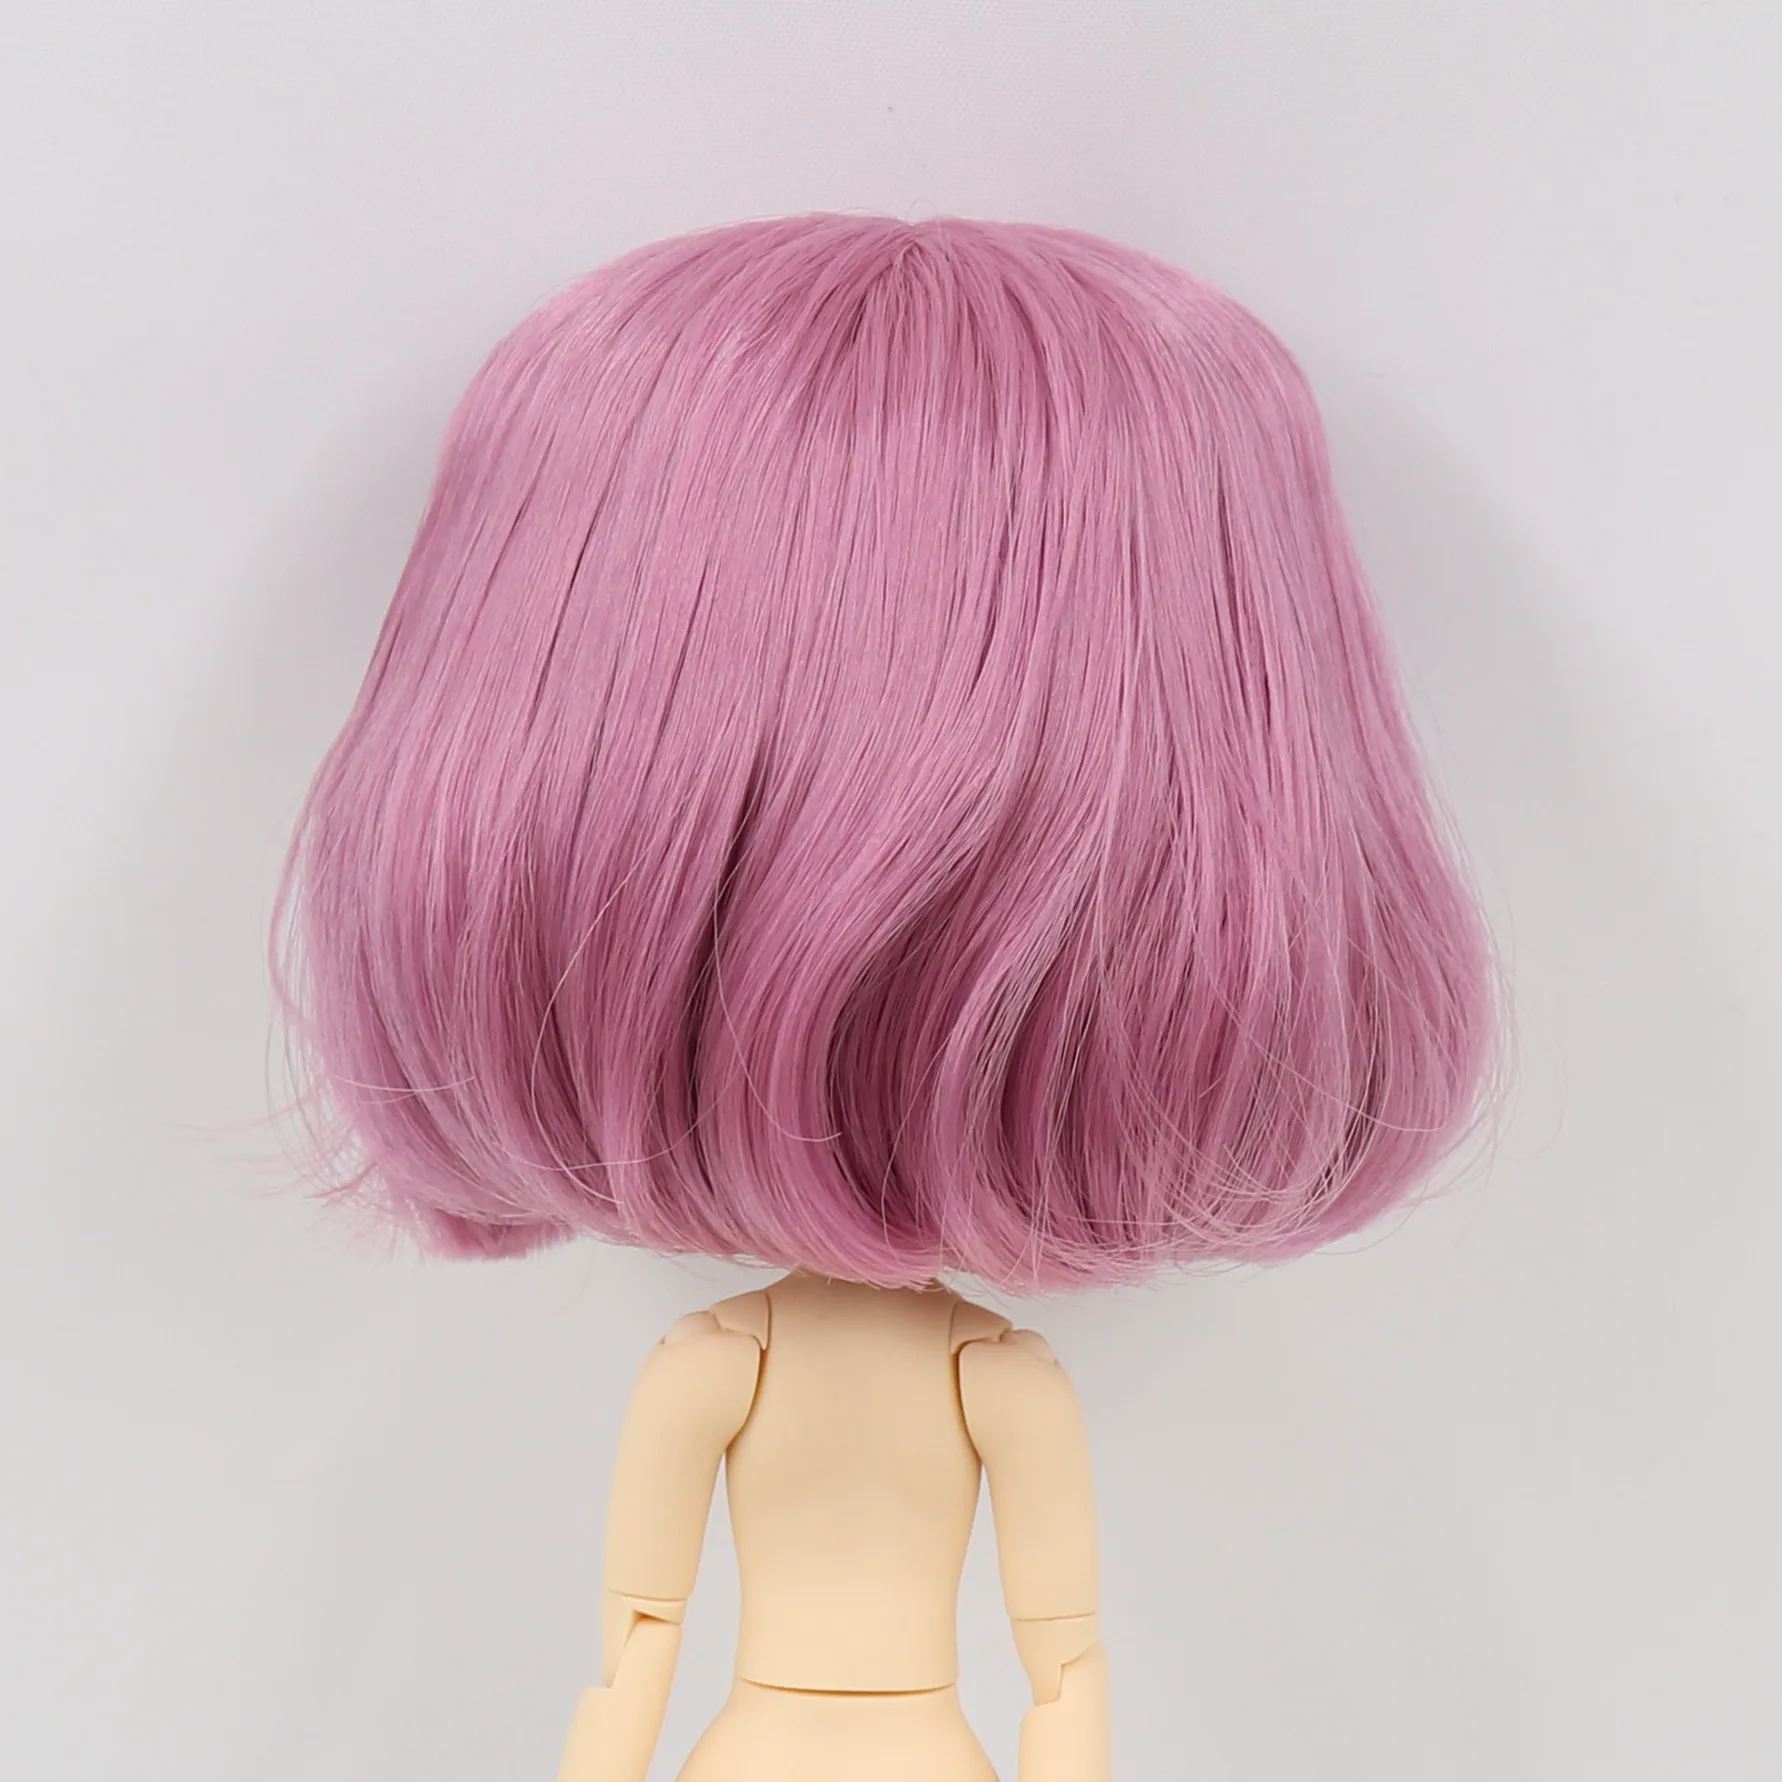 Middie Blythe Parrucca rosa premium per capelli da bambola con cupola sul cuoio capelluto 1